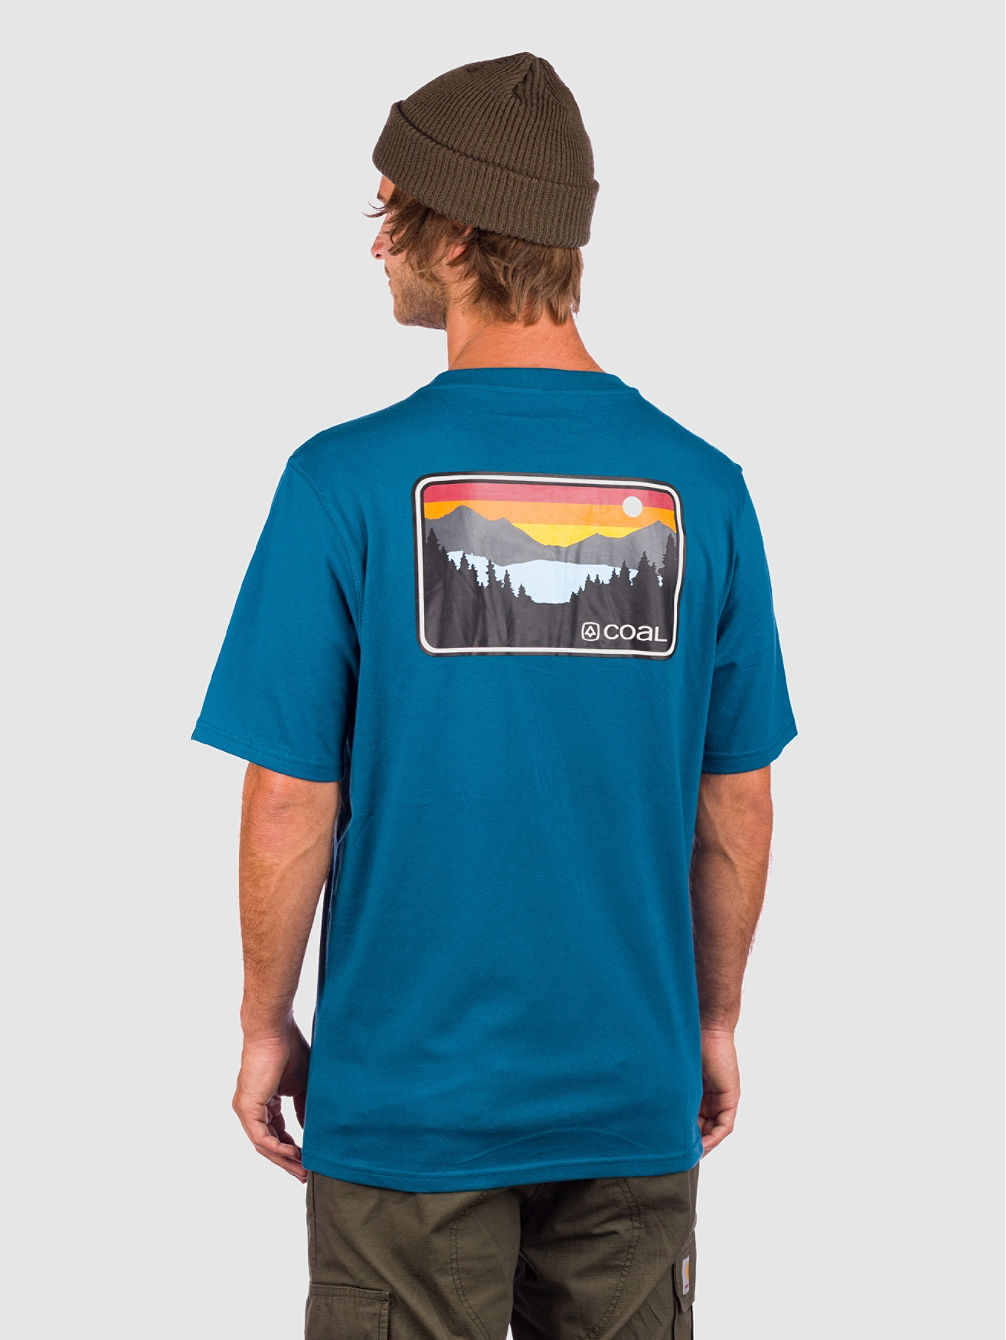 Klamath T-Shirt